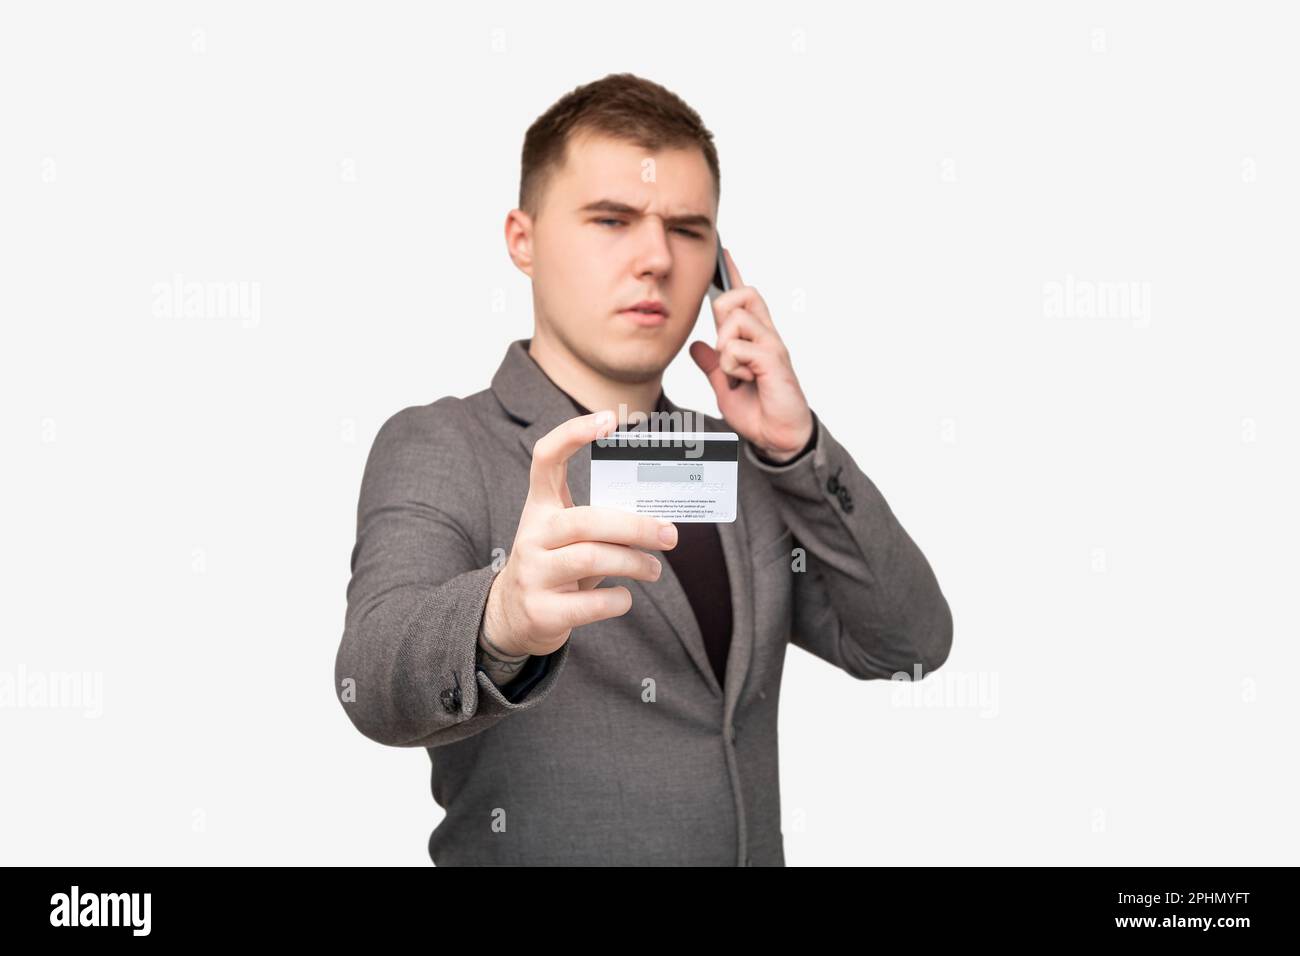 scam telefono chiamata maschio banca cliente dati della carta di credito Foto Stock